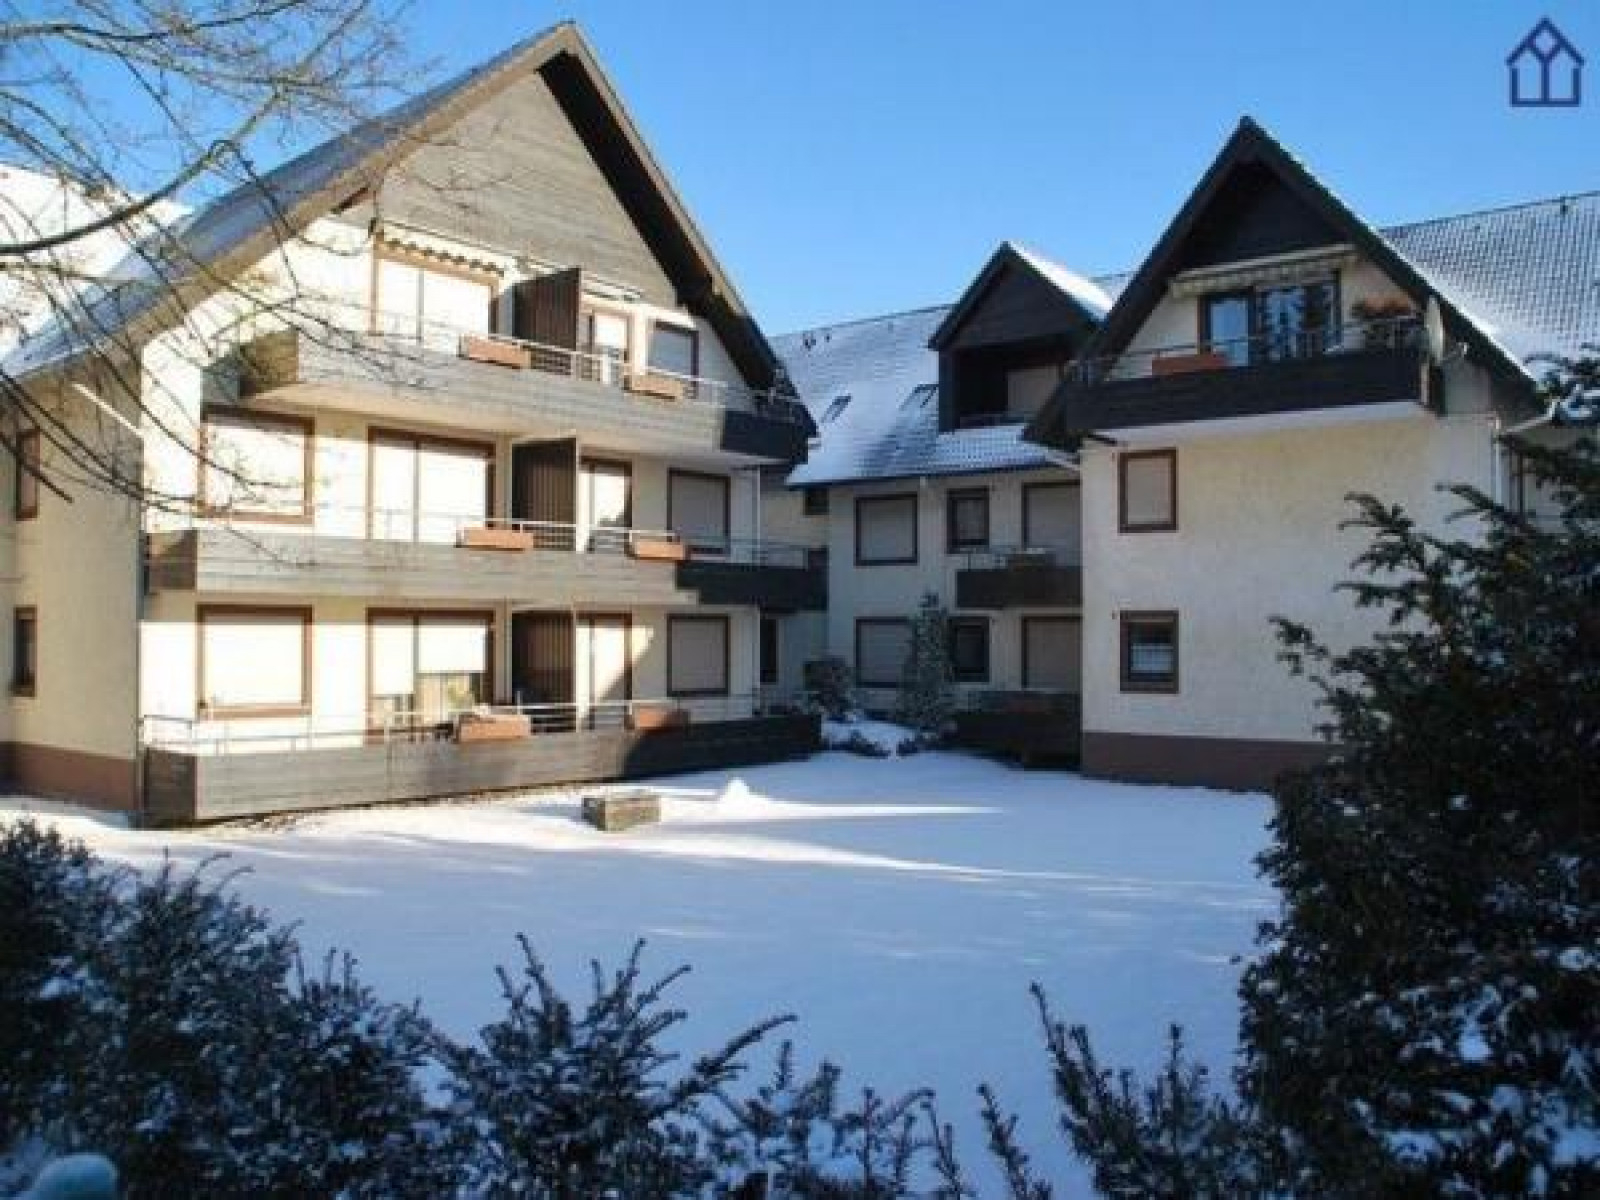 Luxe 4 persoons vakantieappartement in Winterberg - Duitsland - Europa - Winterberg